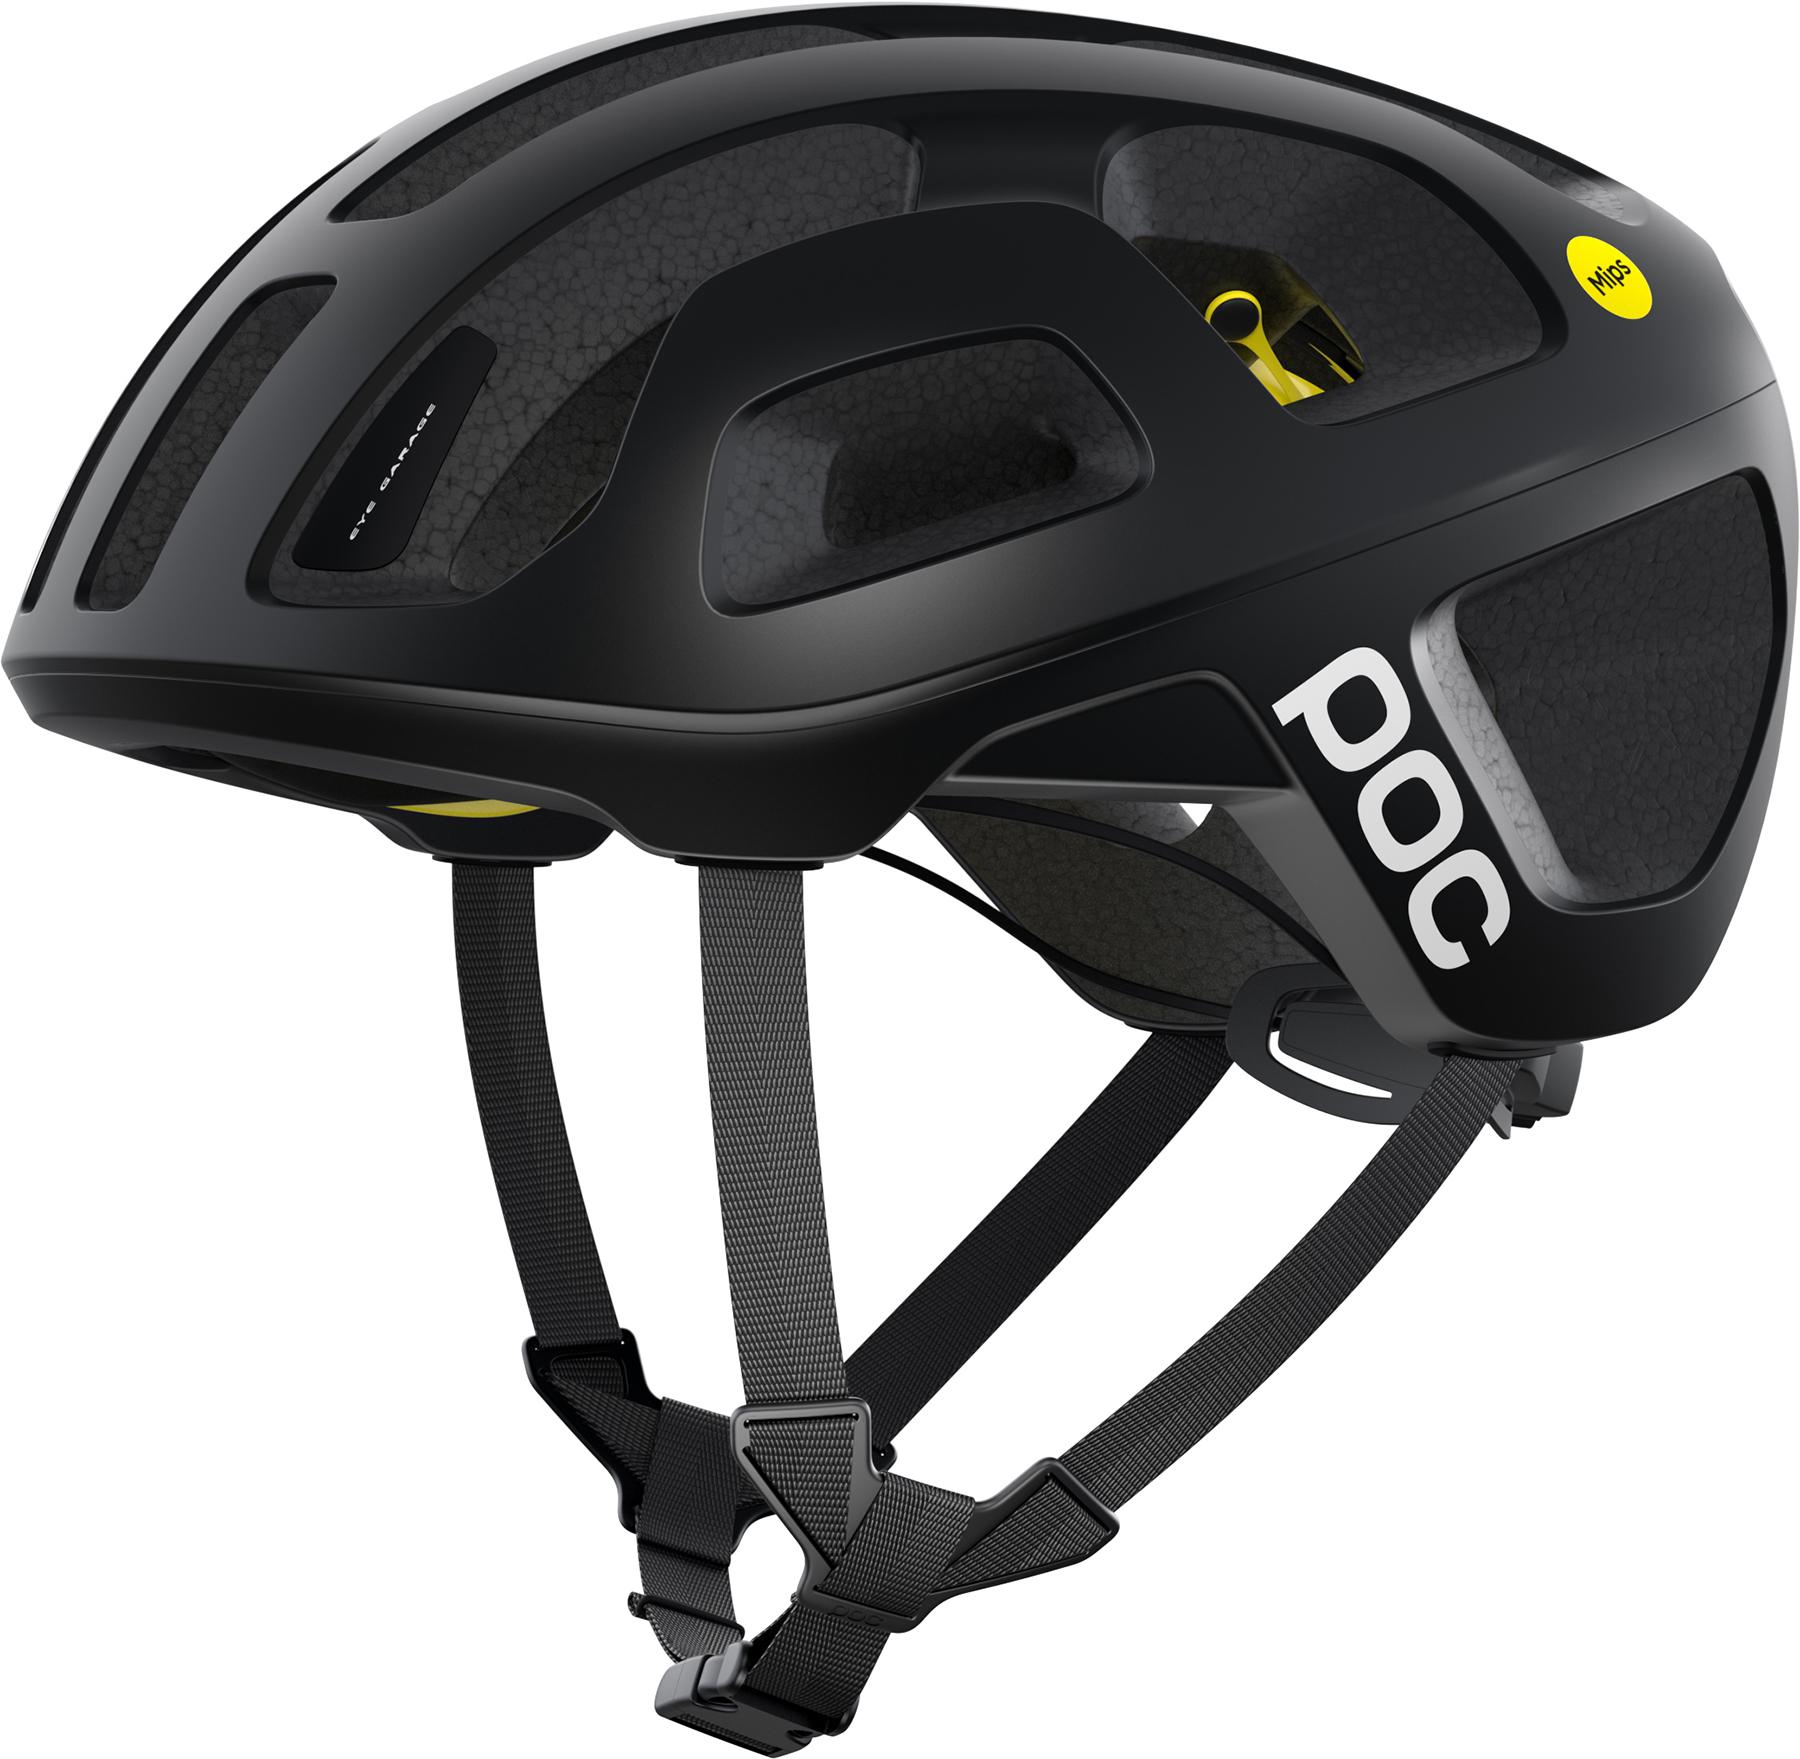 Poc Octal Mips Road Cycling Helmet - Uranium Black Matt